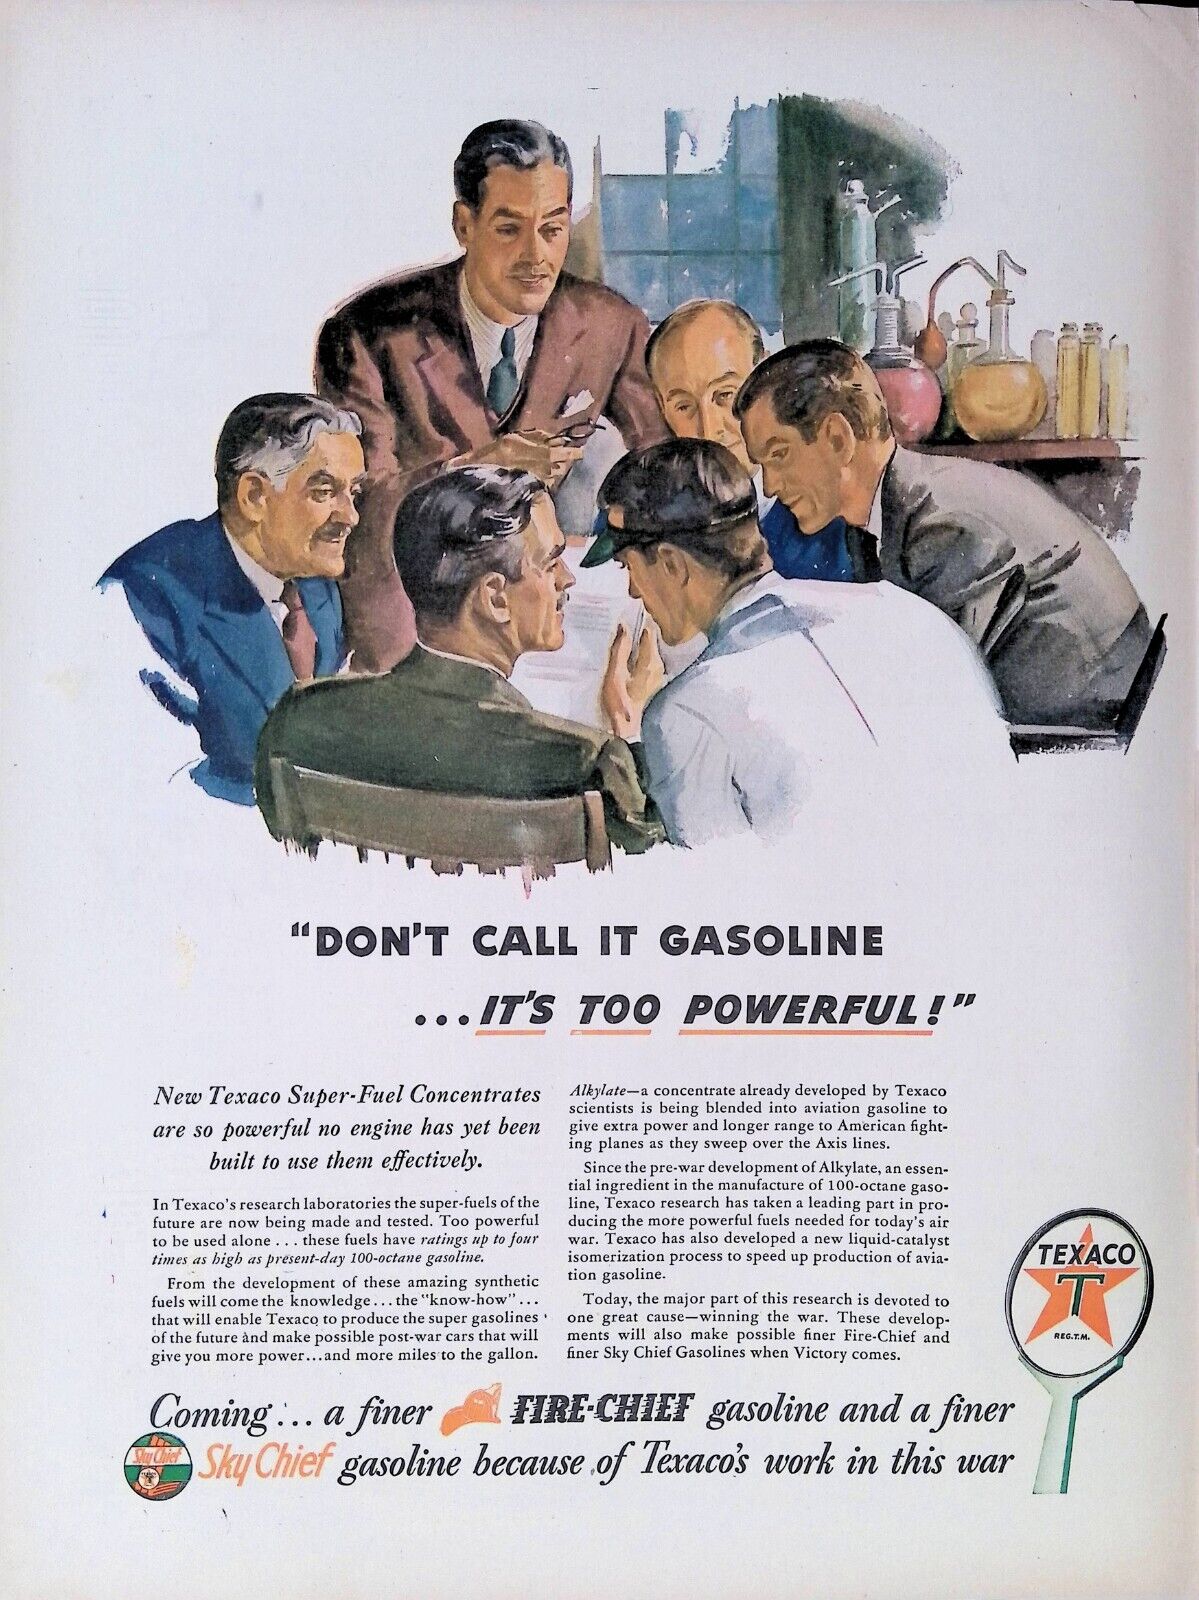 Print Ad 1940\'s Texaco Fire-Chief Gasoline Research Laboratory Male Scientists